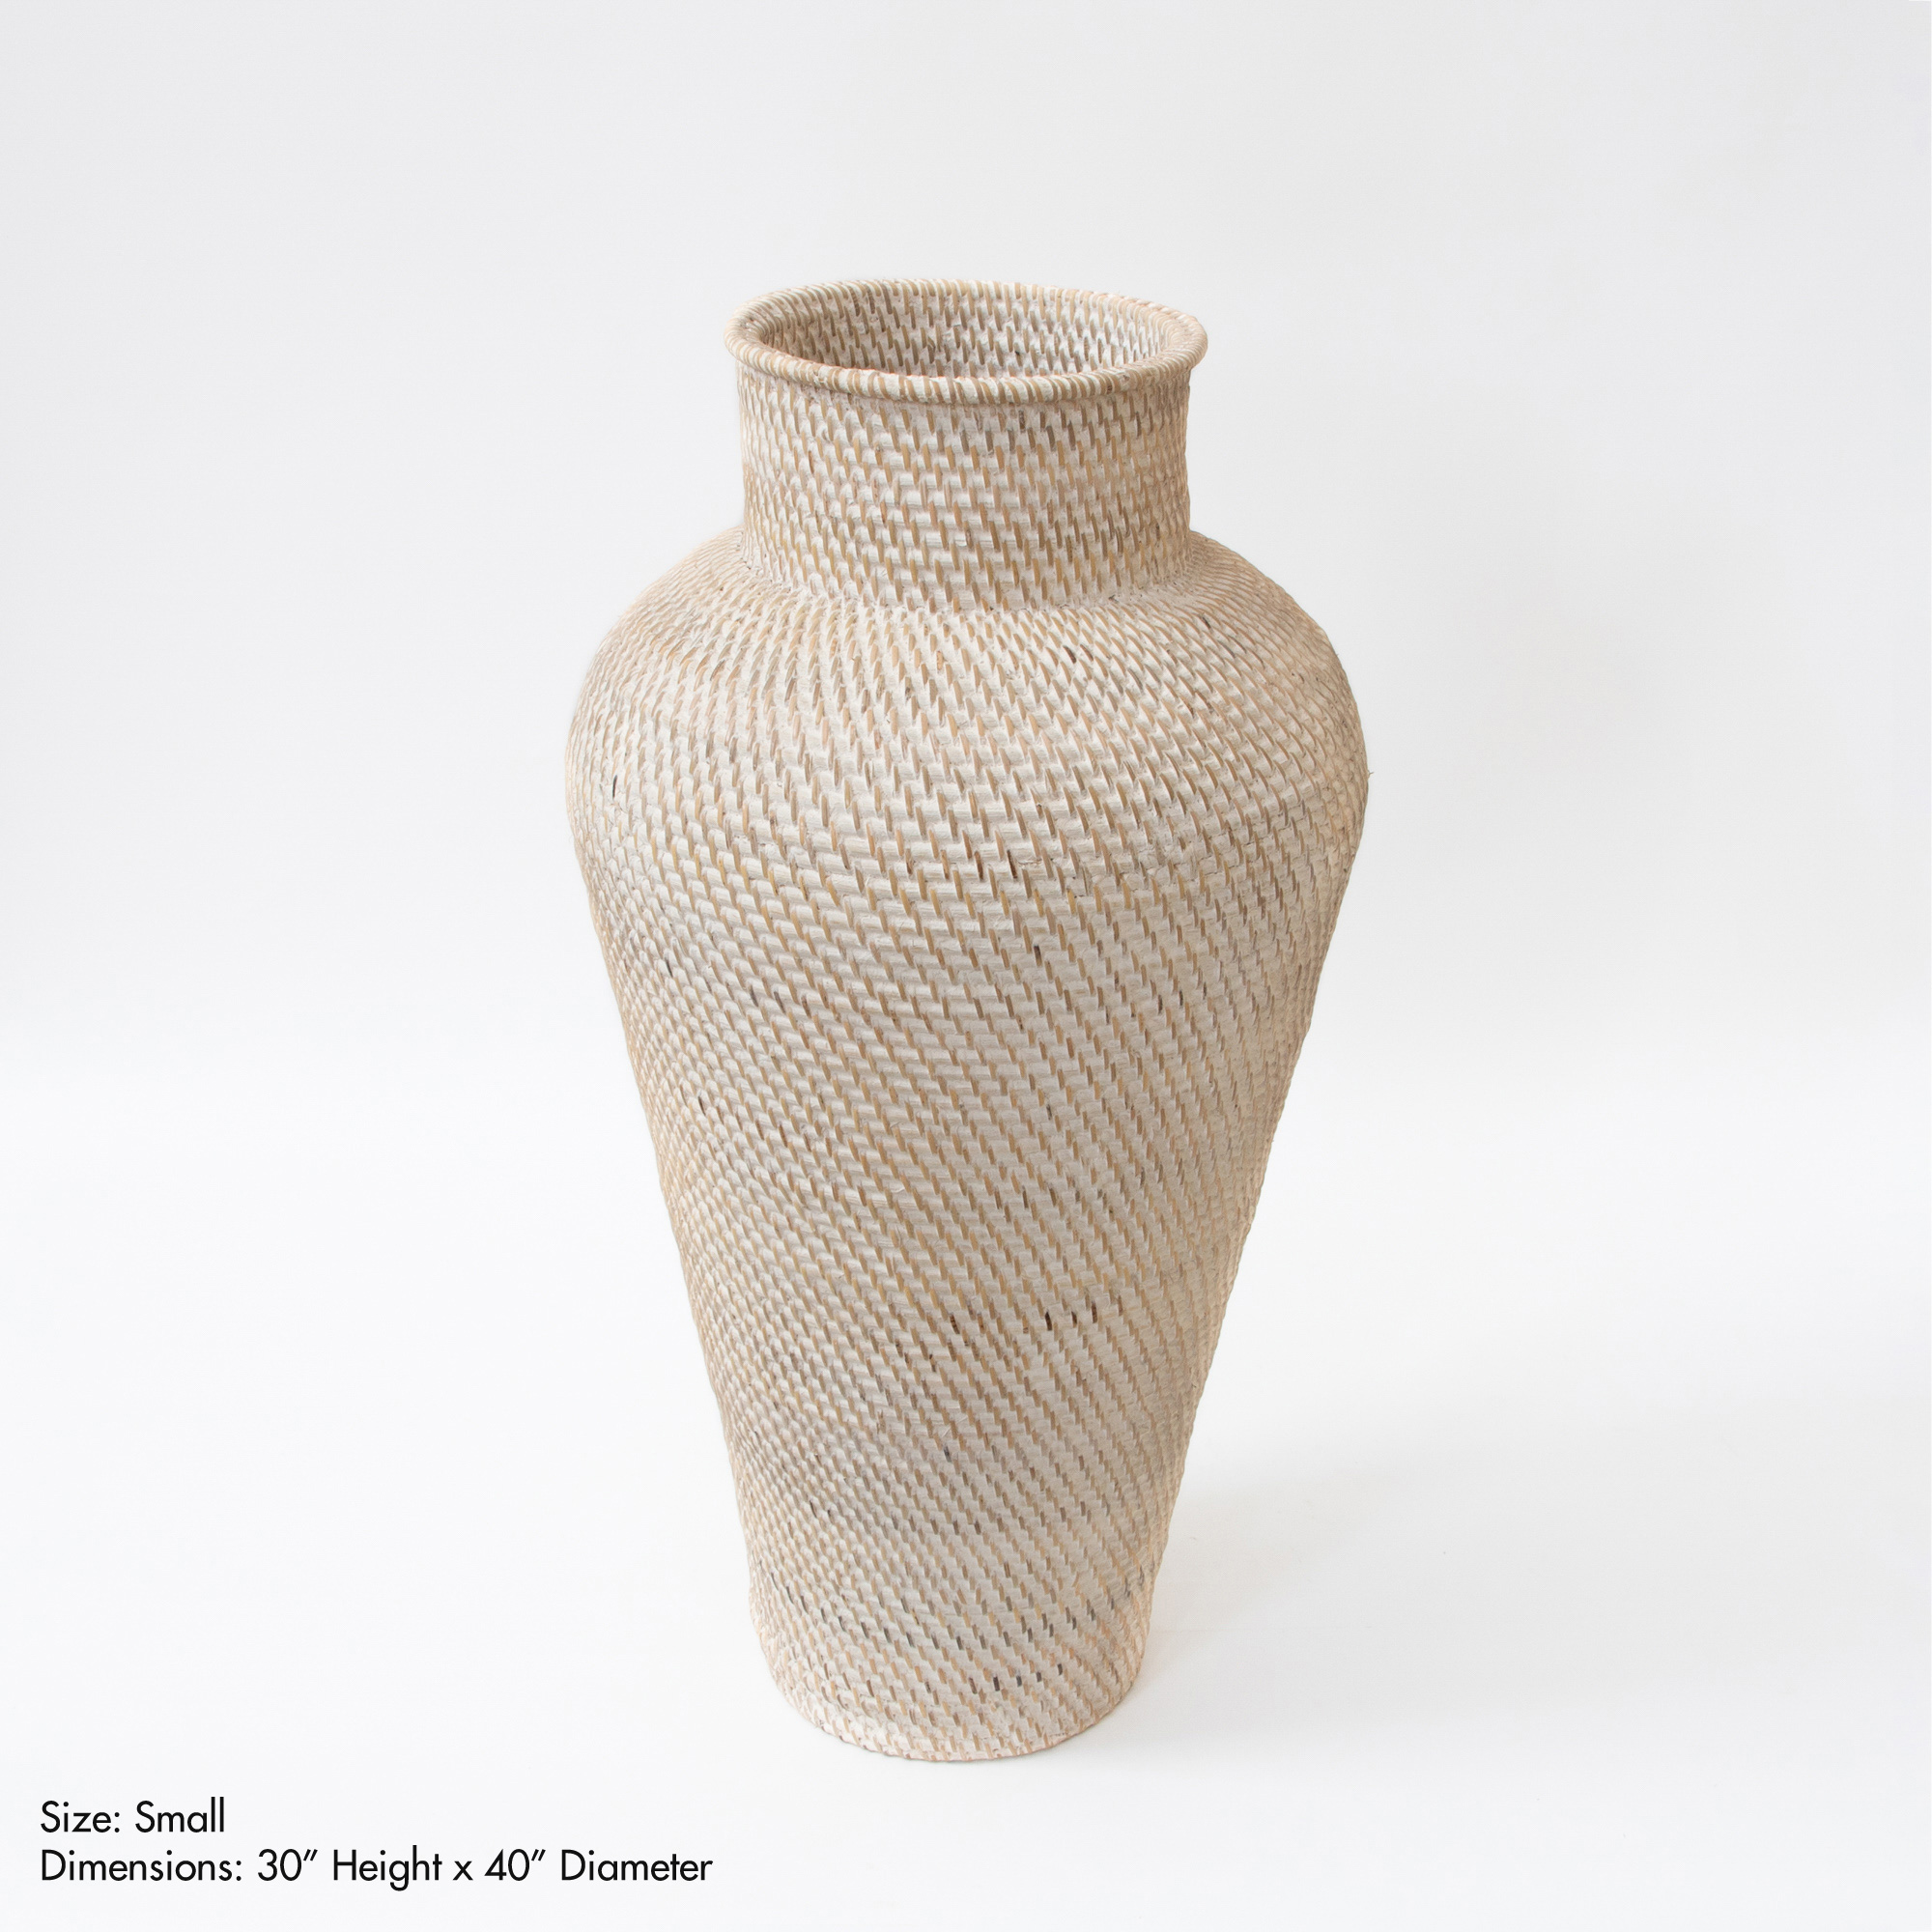 Hata Handwoven Floor Vase With Lid